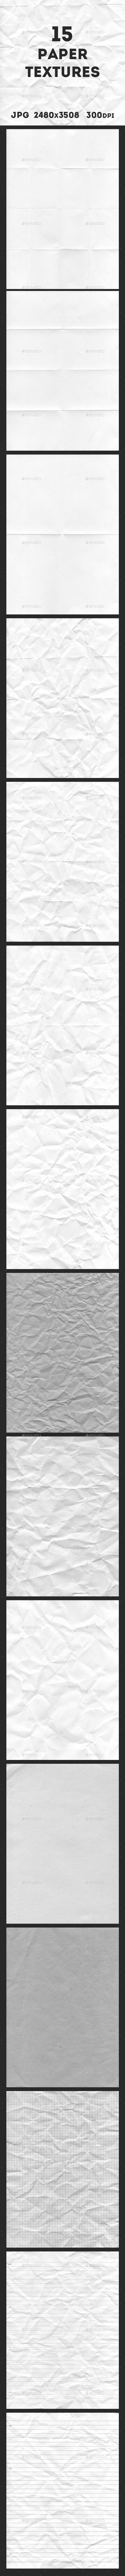 15 Paper Textures